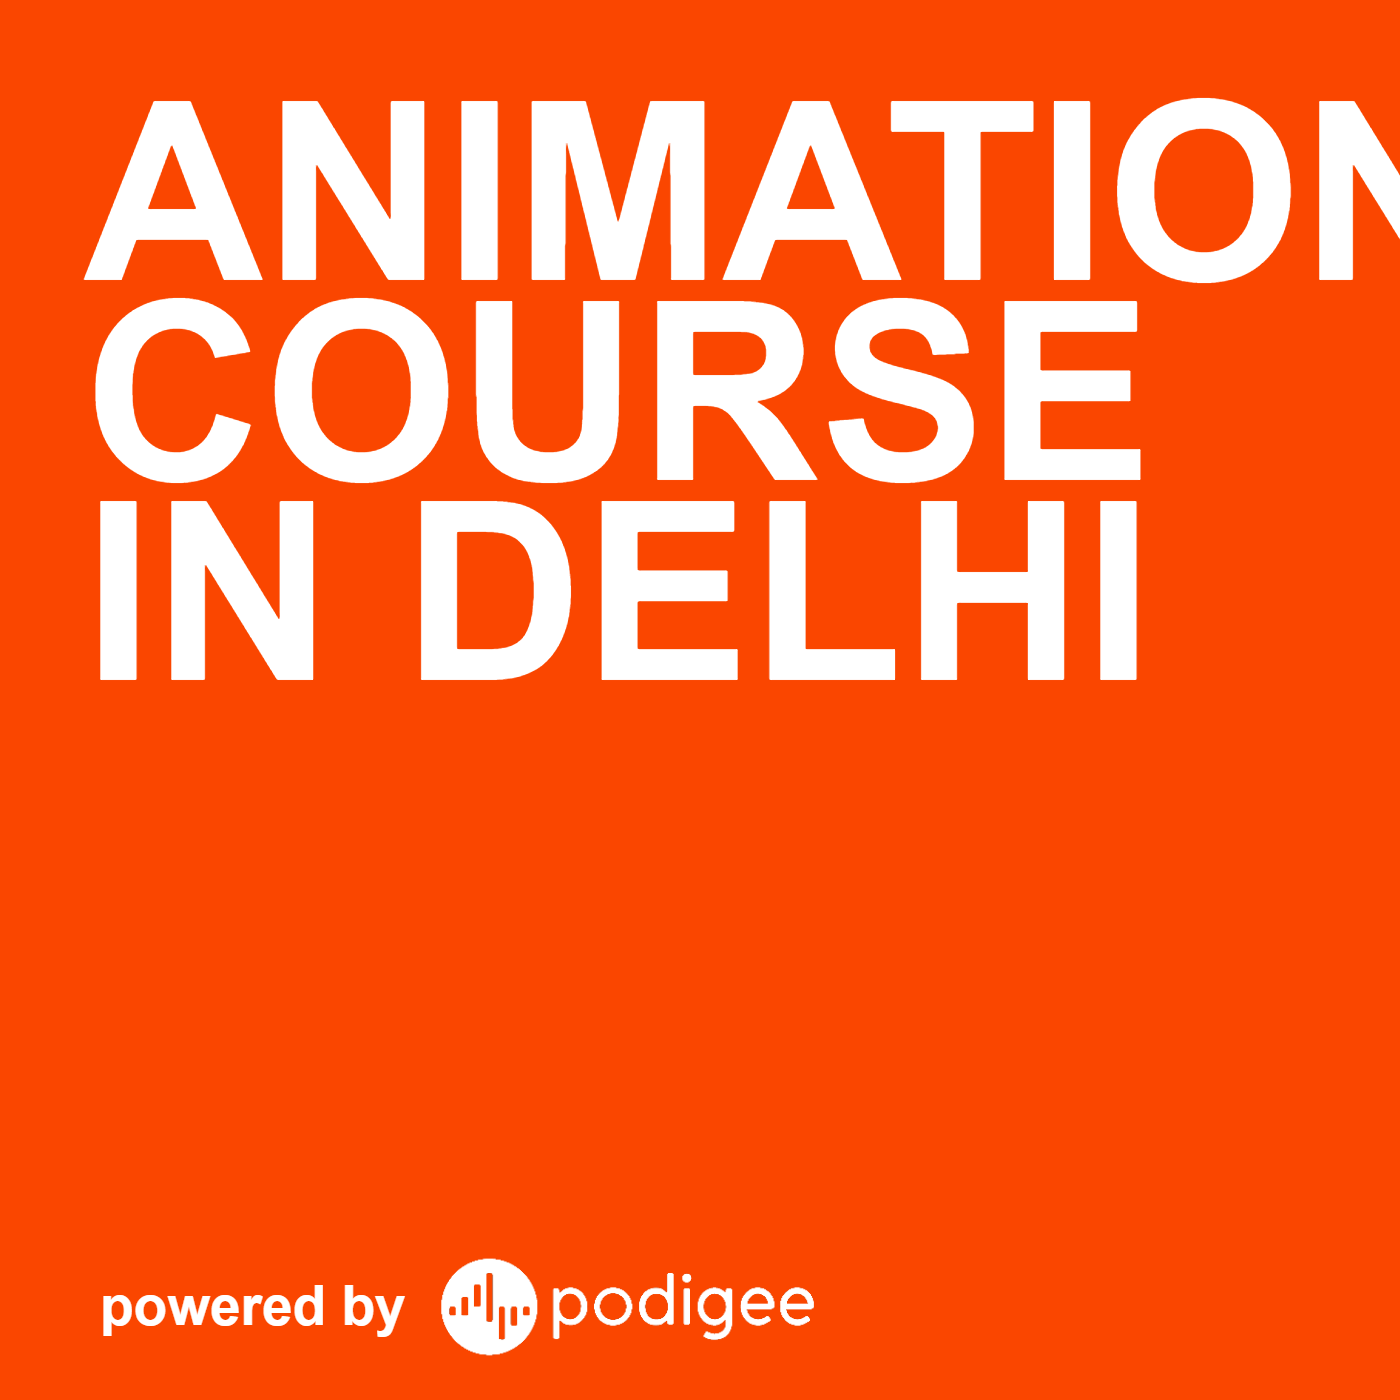 Animation Course in Delhi - Podcast